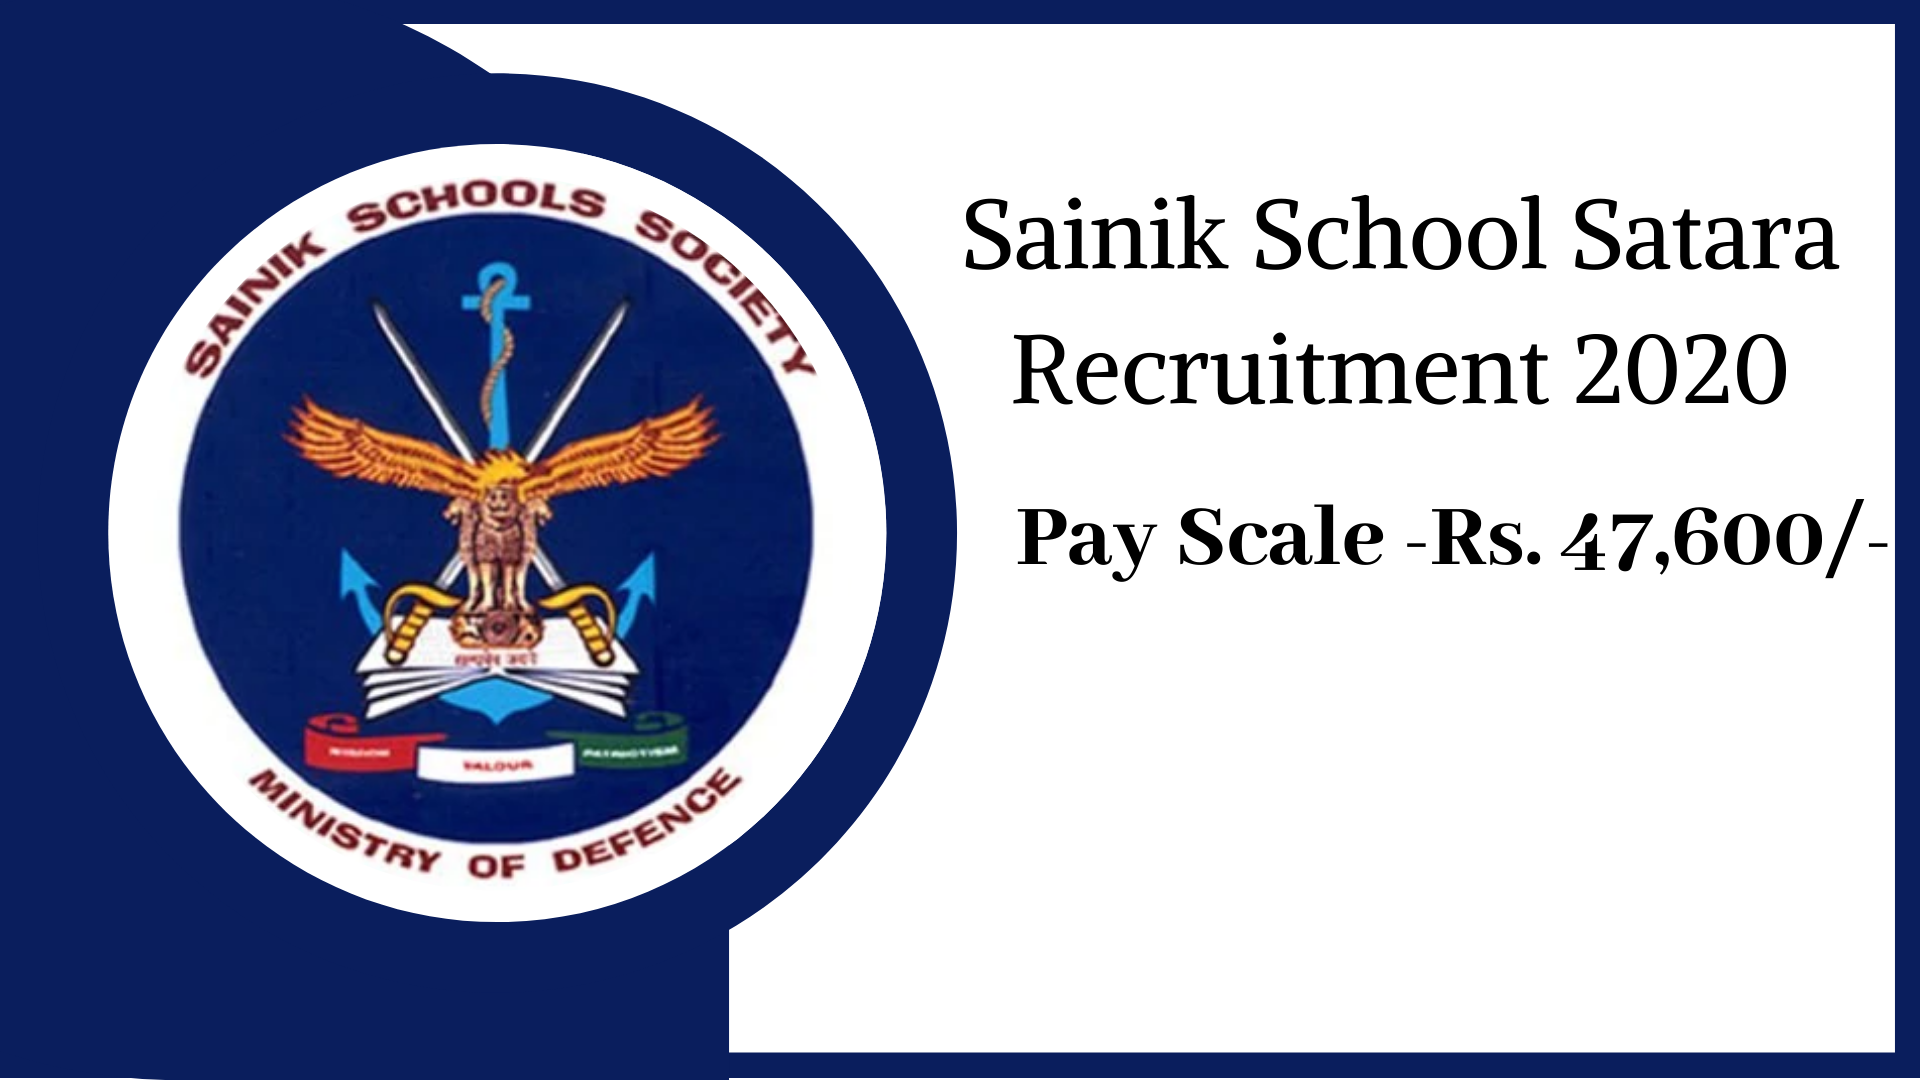 Sainik School Satara Recruitment 2020